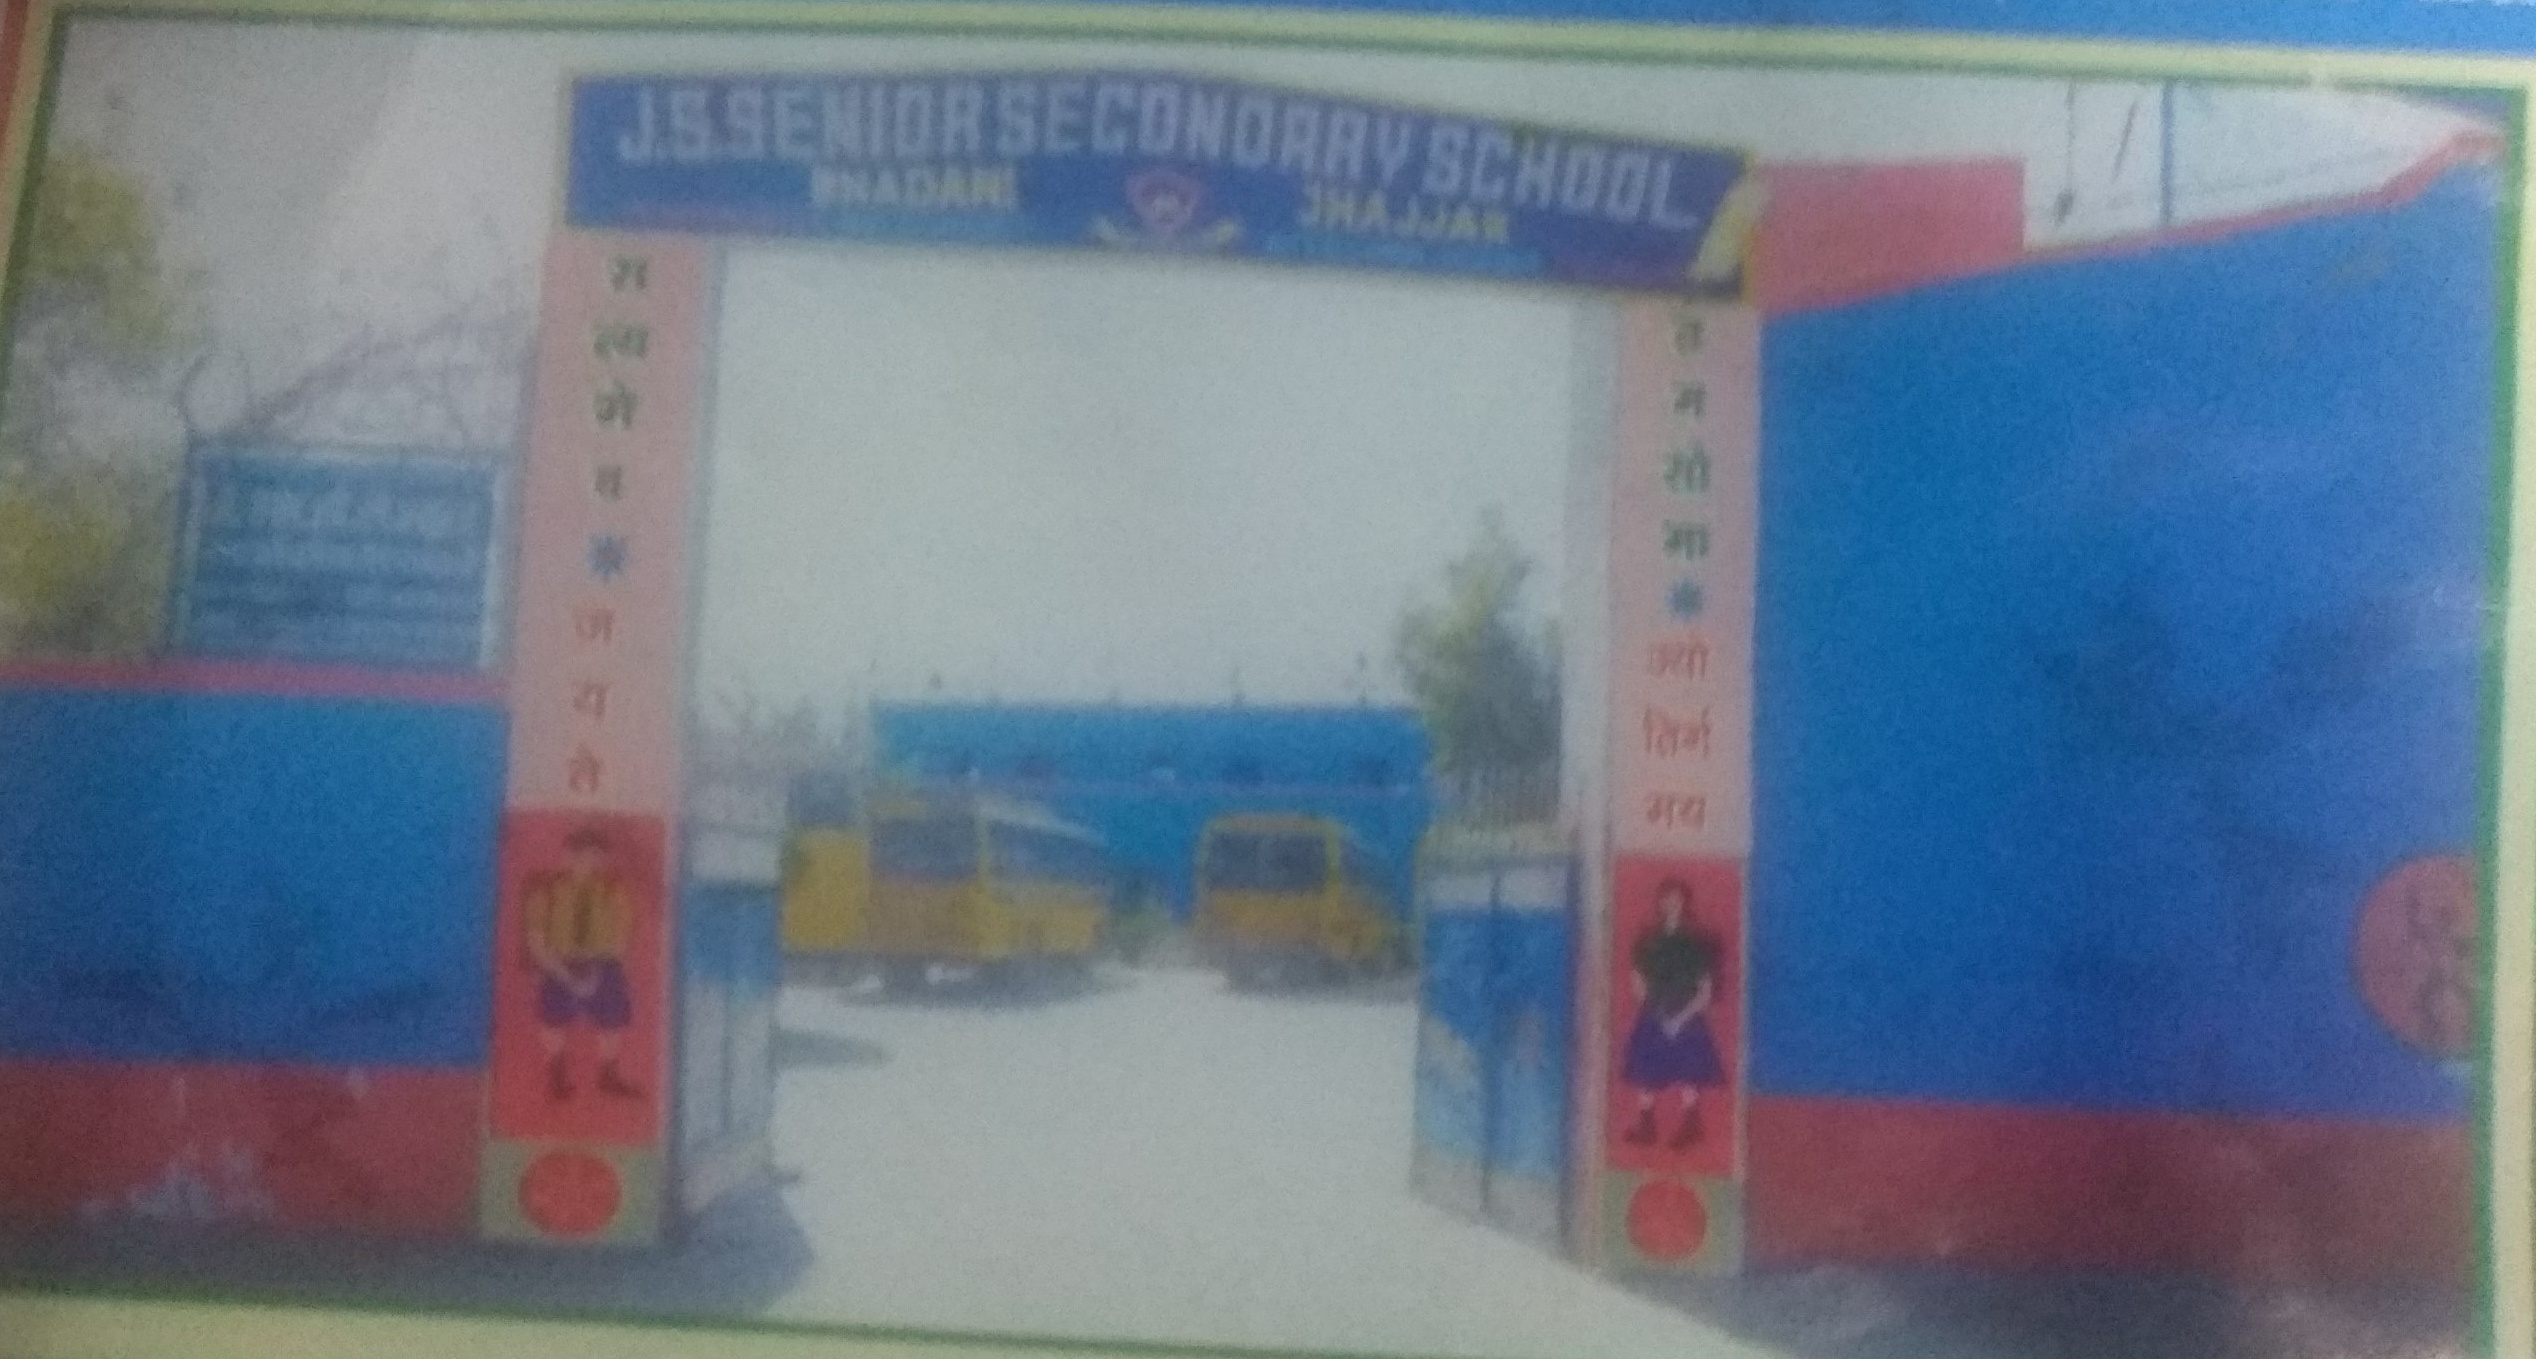 J.S Sr. Sec. School|Schools|Education